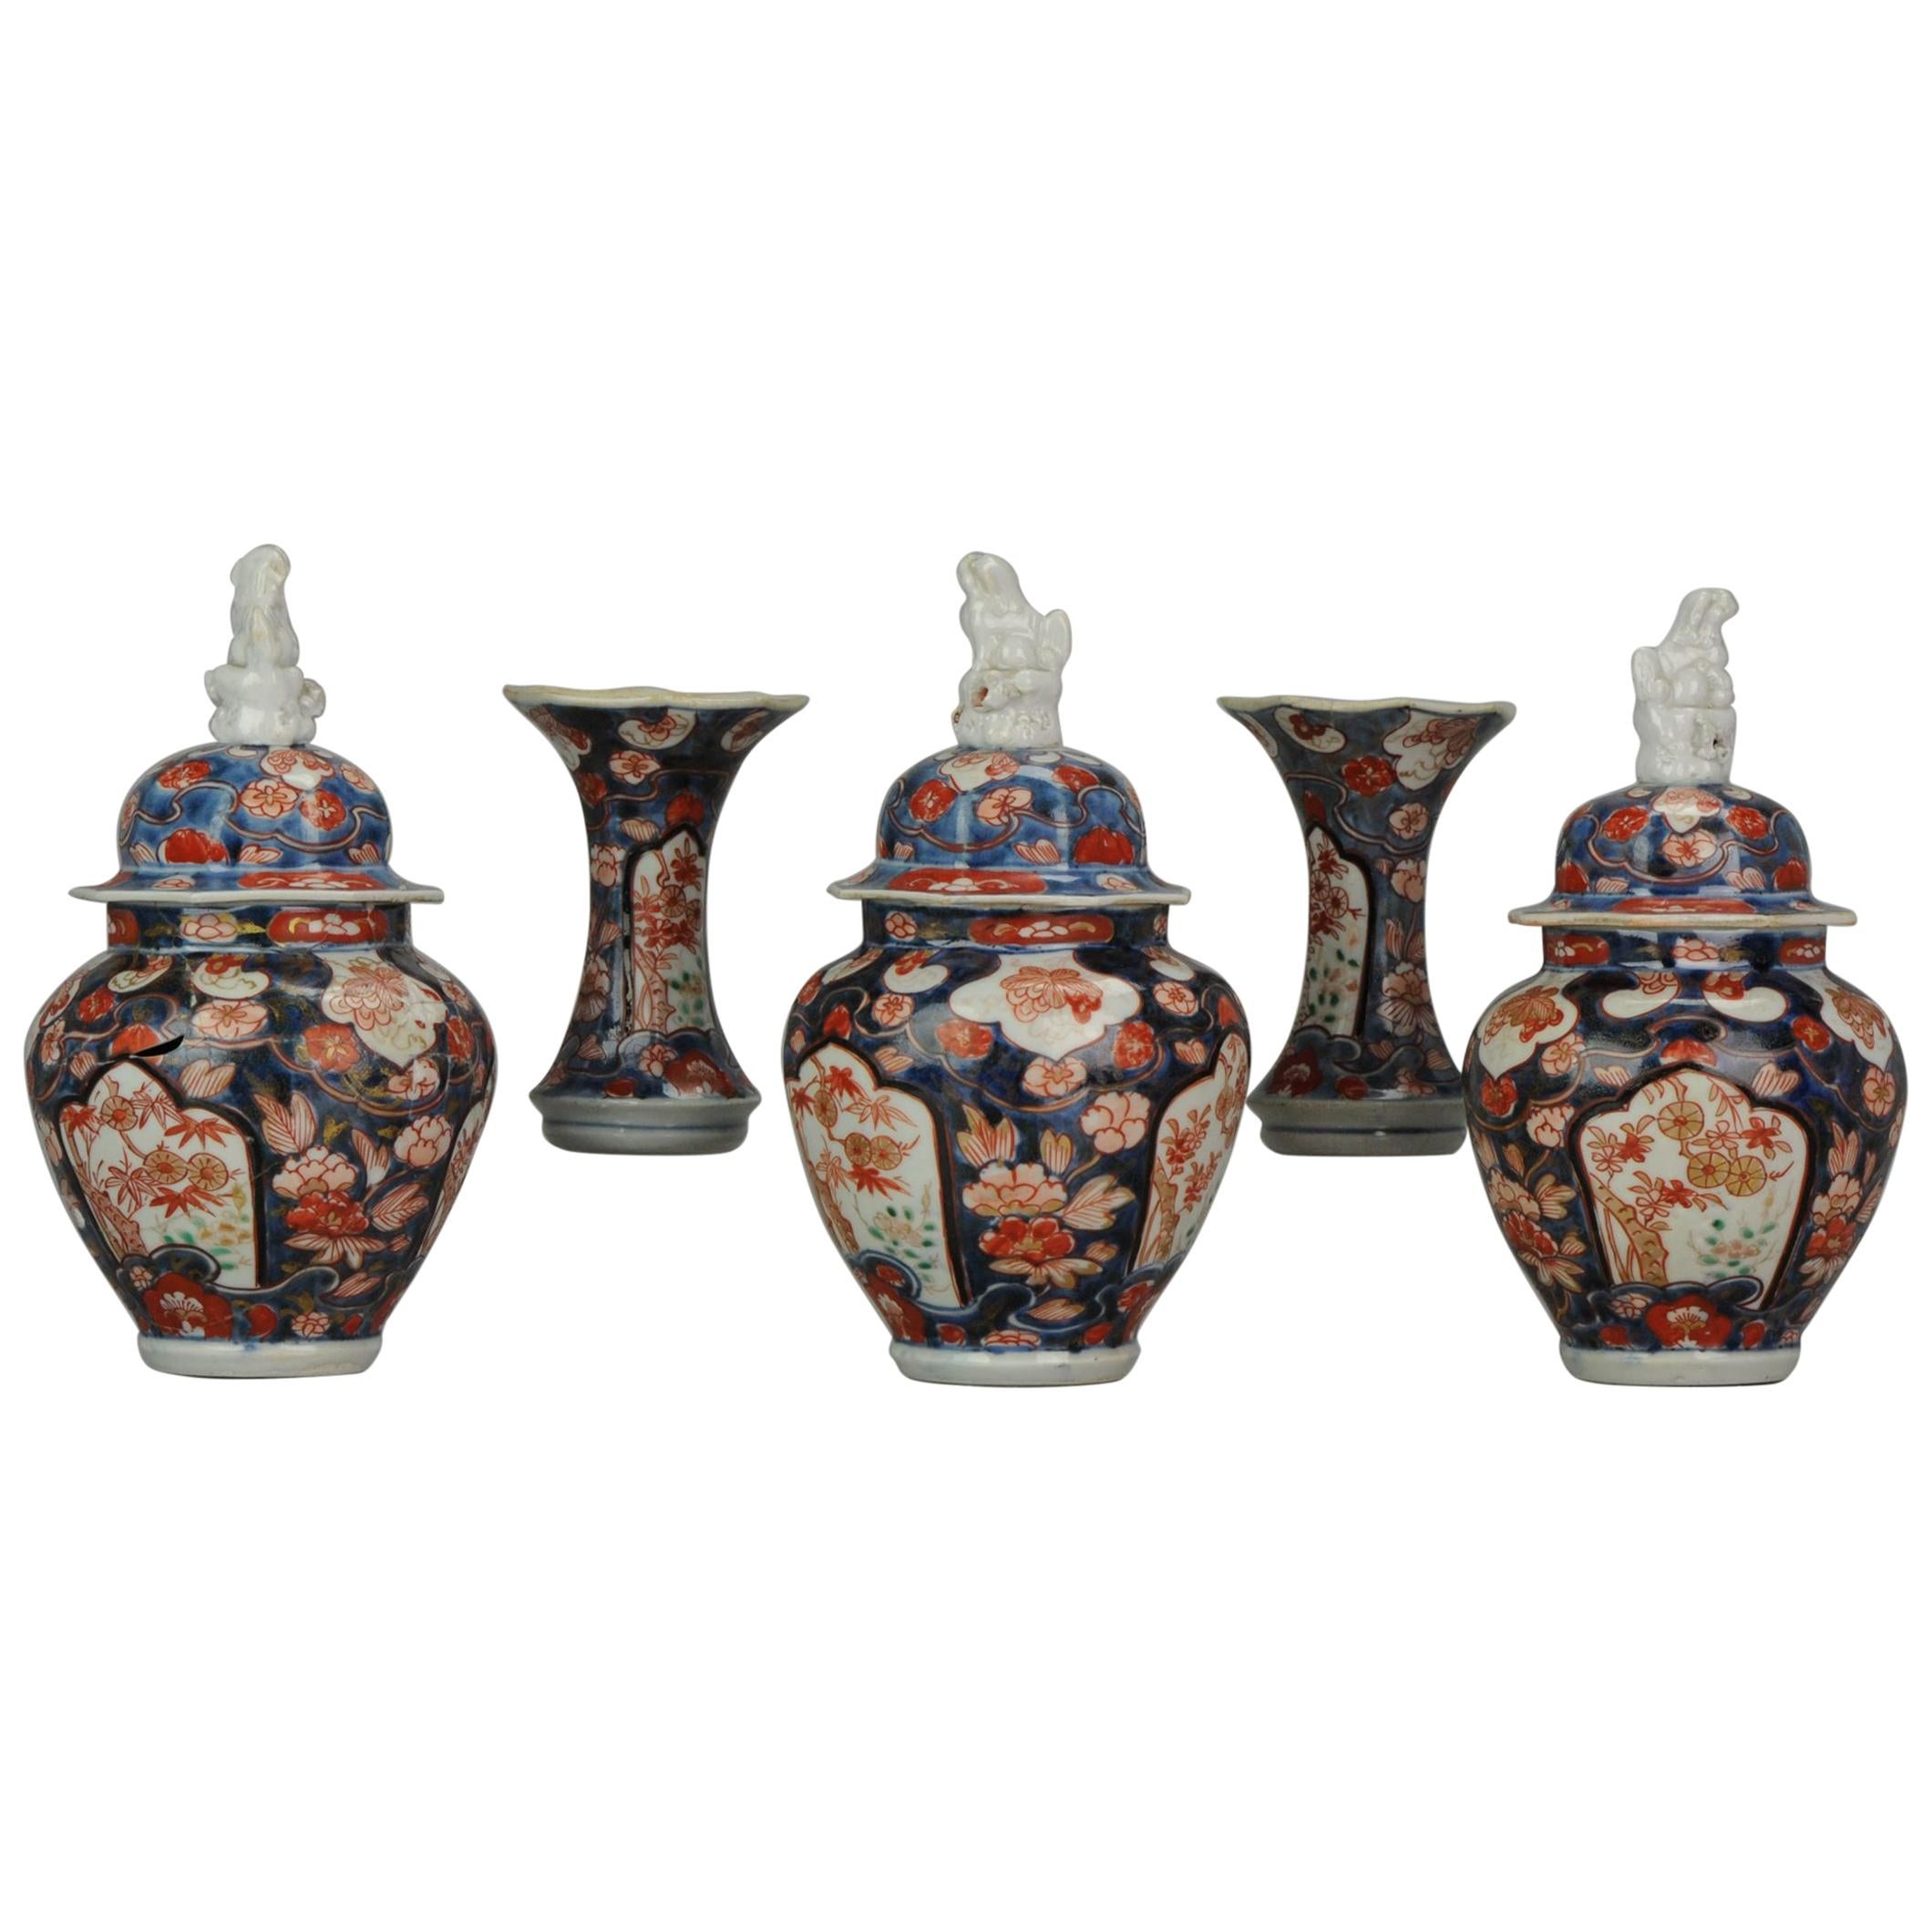 Antique 18th Century Japanese Garniture Porcelain Vase Imari Edo Period